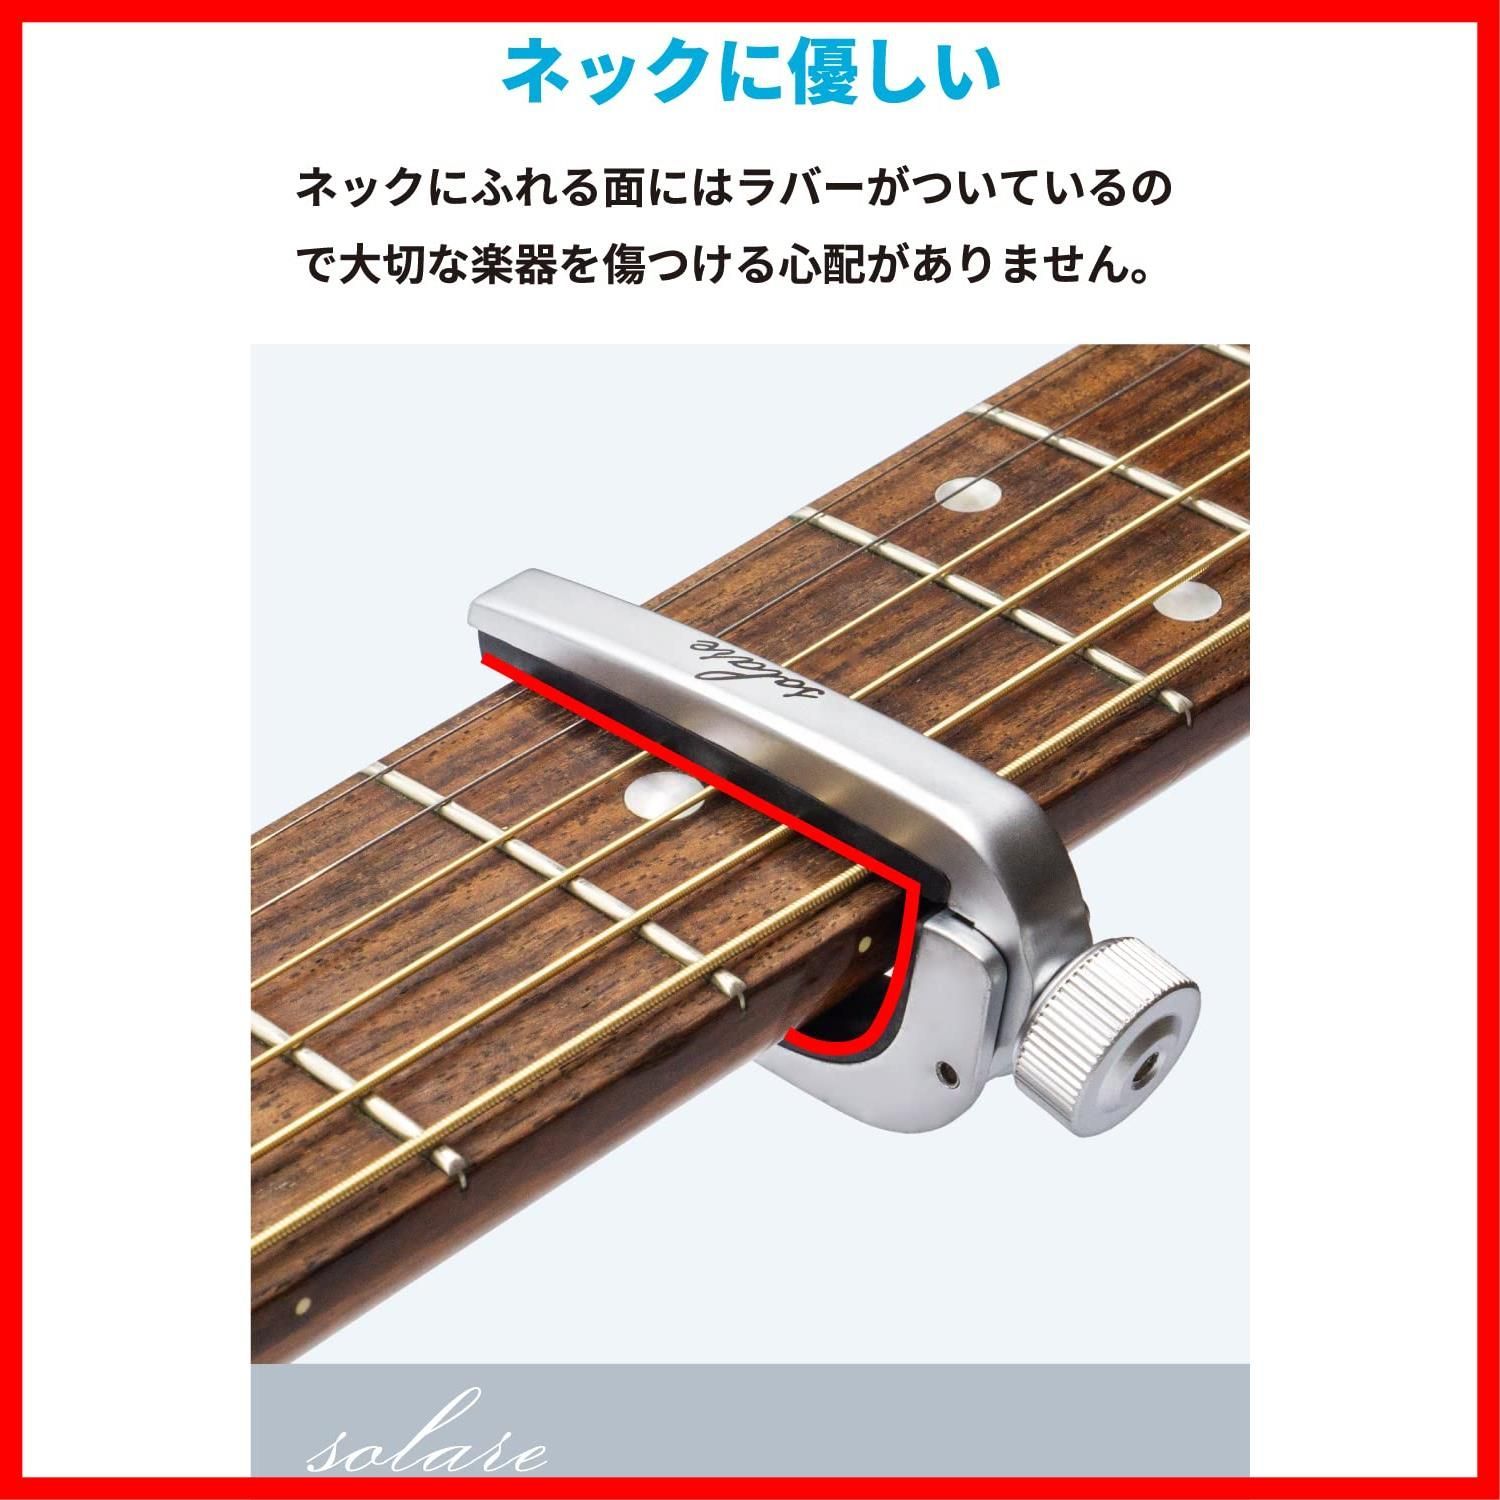 人気商品】Solare カポタスト カポ ギター アコギ エレキ クラシック アコースティックギター用 (シルバー) - メルカリ